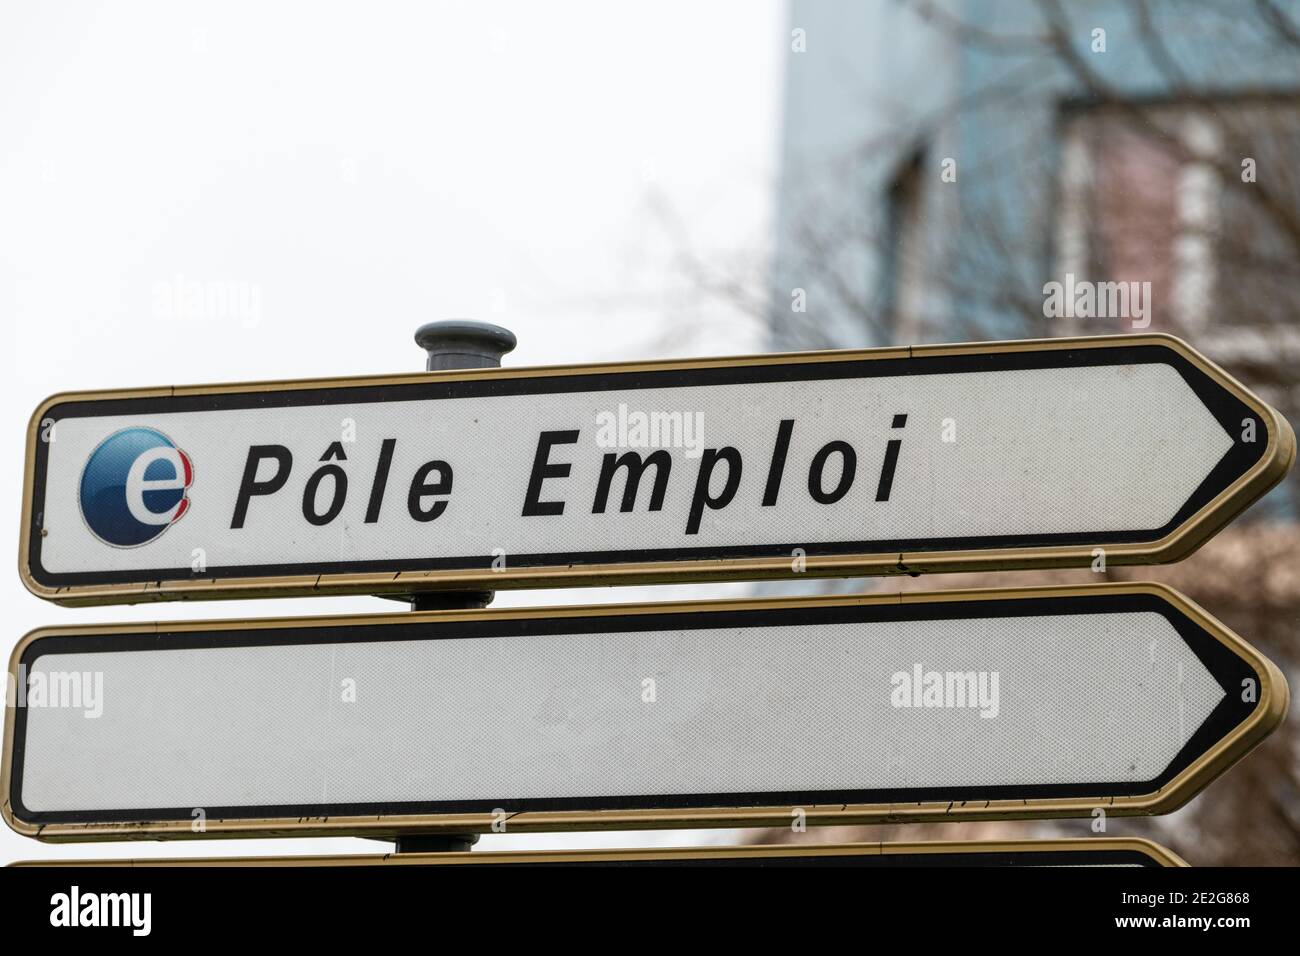 Calais, Frankreich - Januar 13,2020 : Pole emploi Logo auf dem Schild. Pole emploi ist eine französische Regierungsbehörde, die Arbeitslose registriert Stockfoto